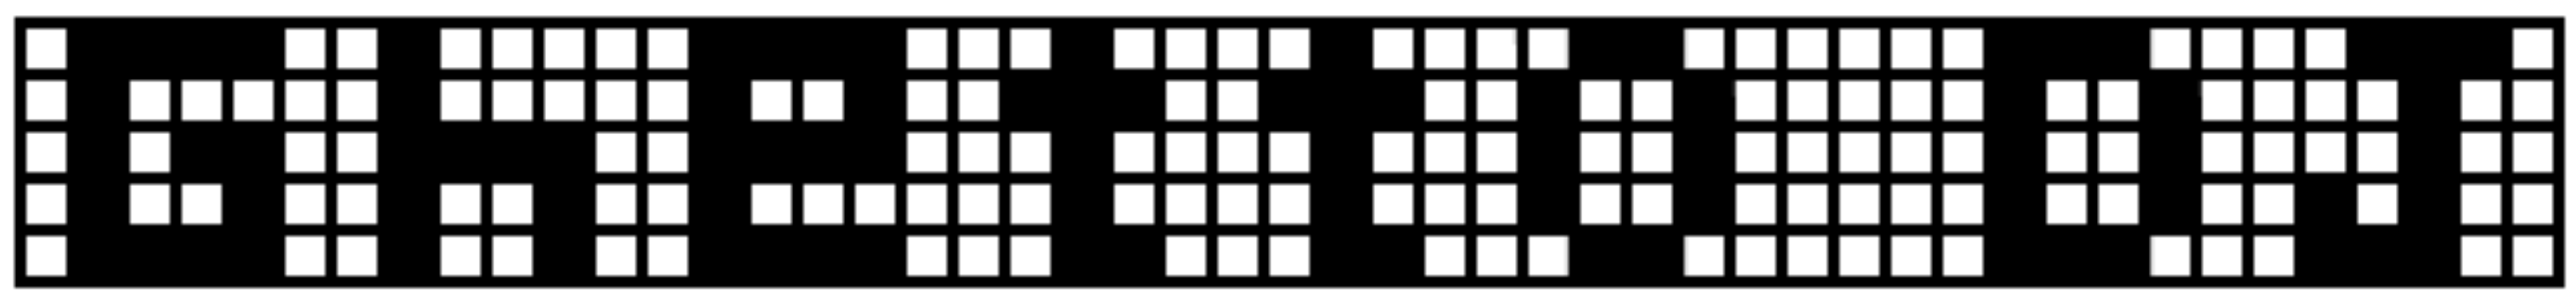 GhetttoDJ-logo-2